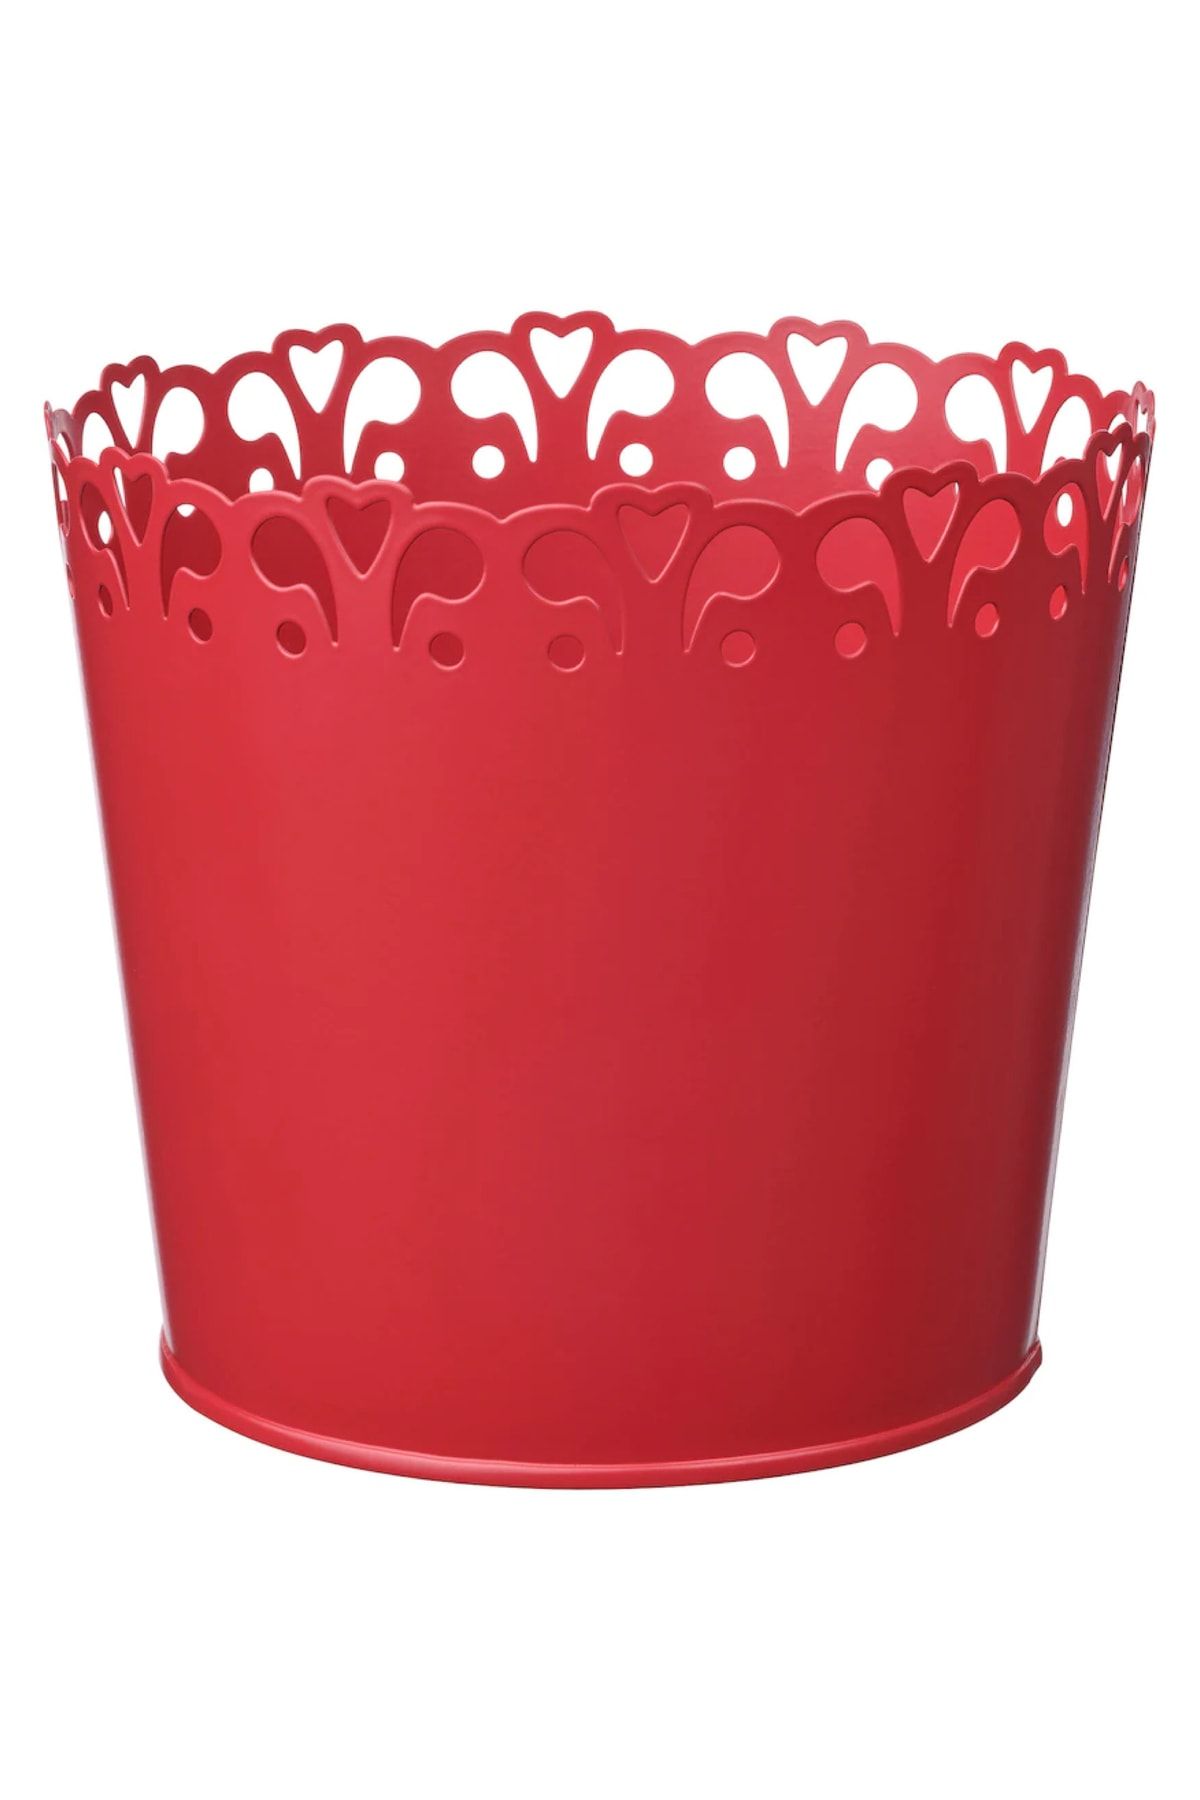 IKEA Vinterfınt 12 Cm Kırmızı Galvanize Çelik Saksı